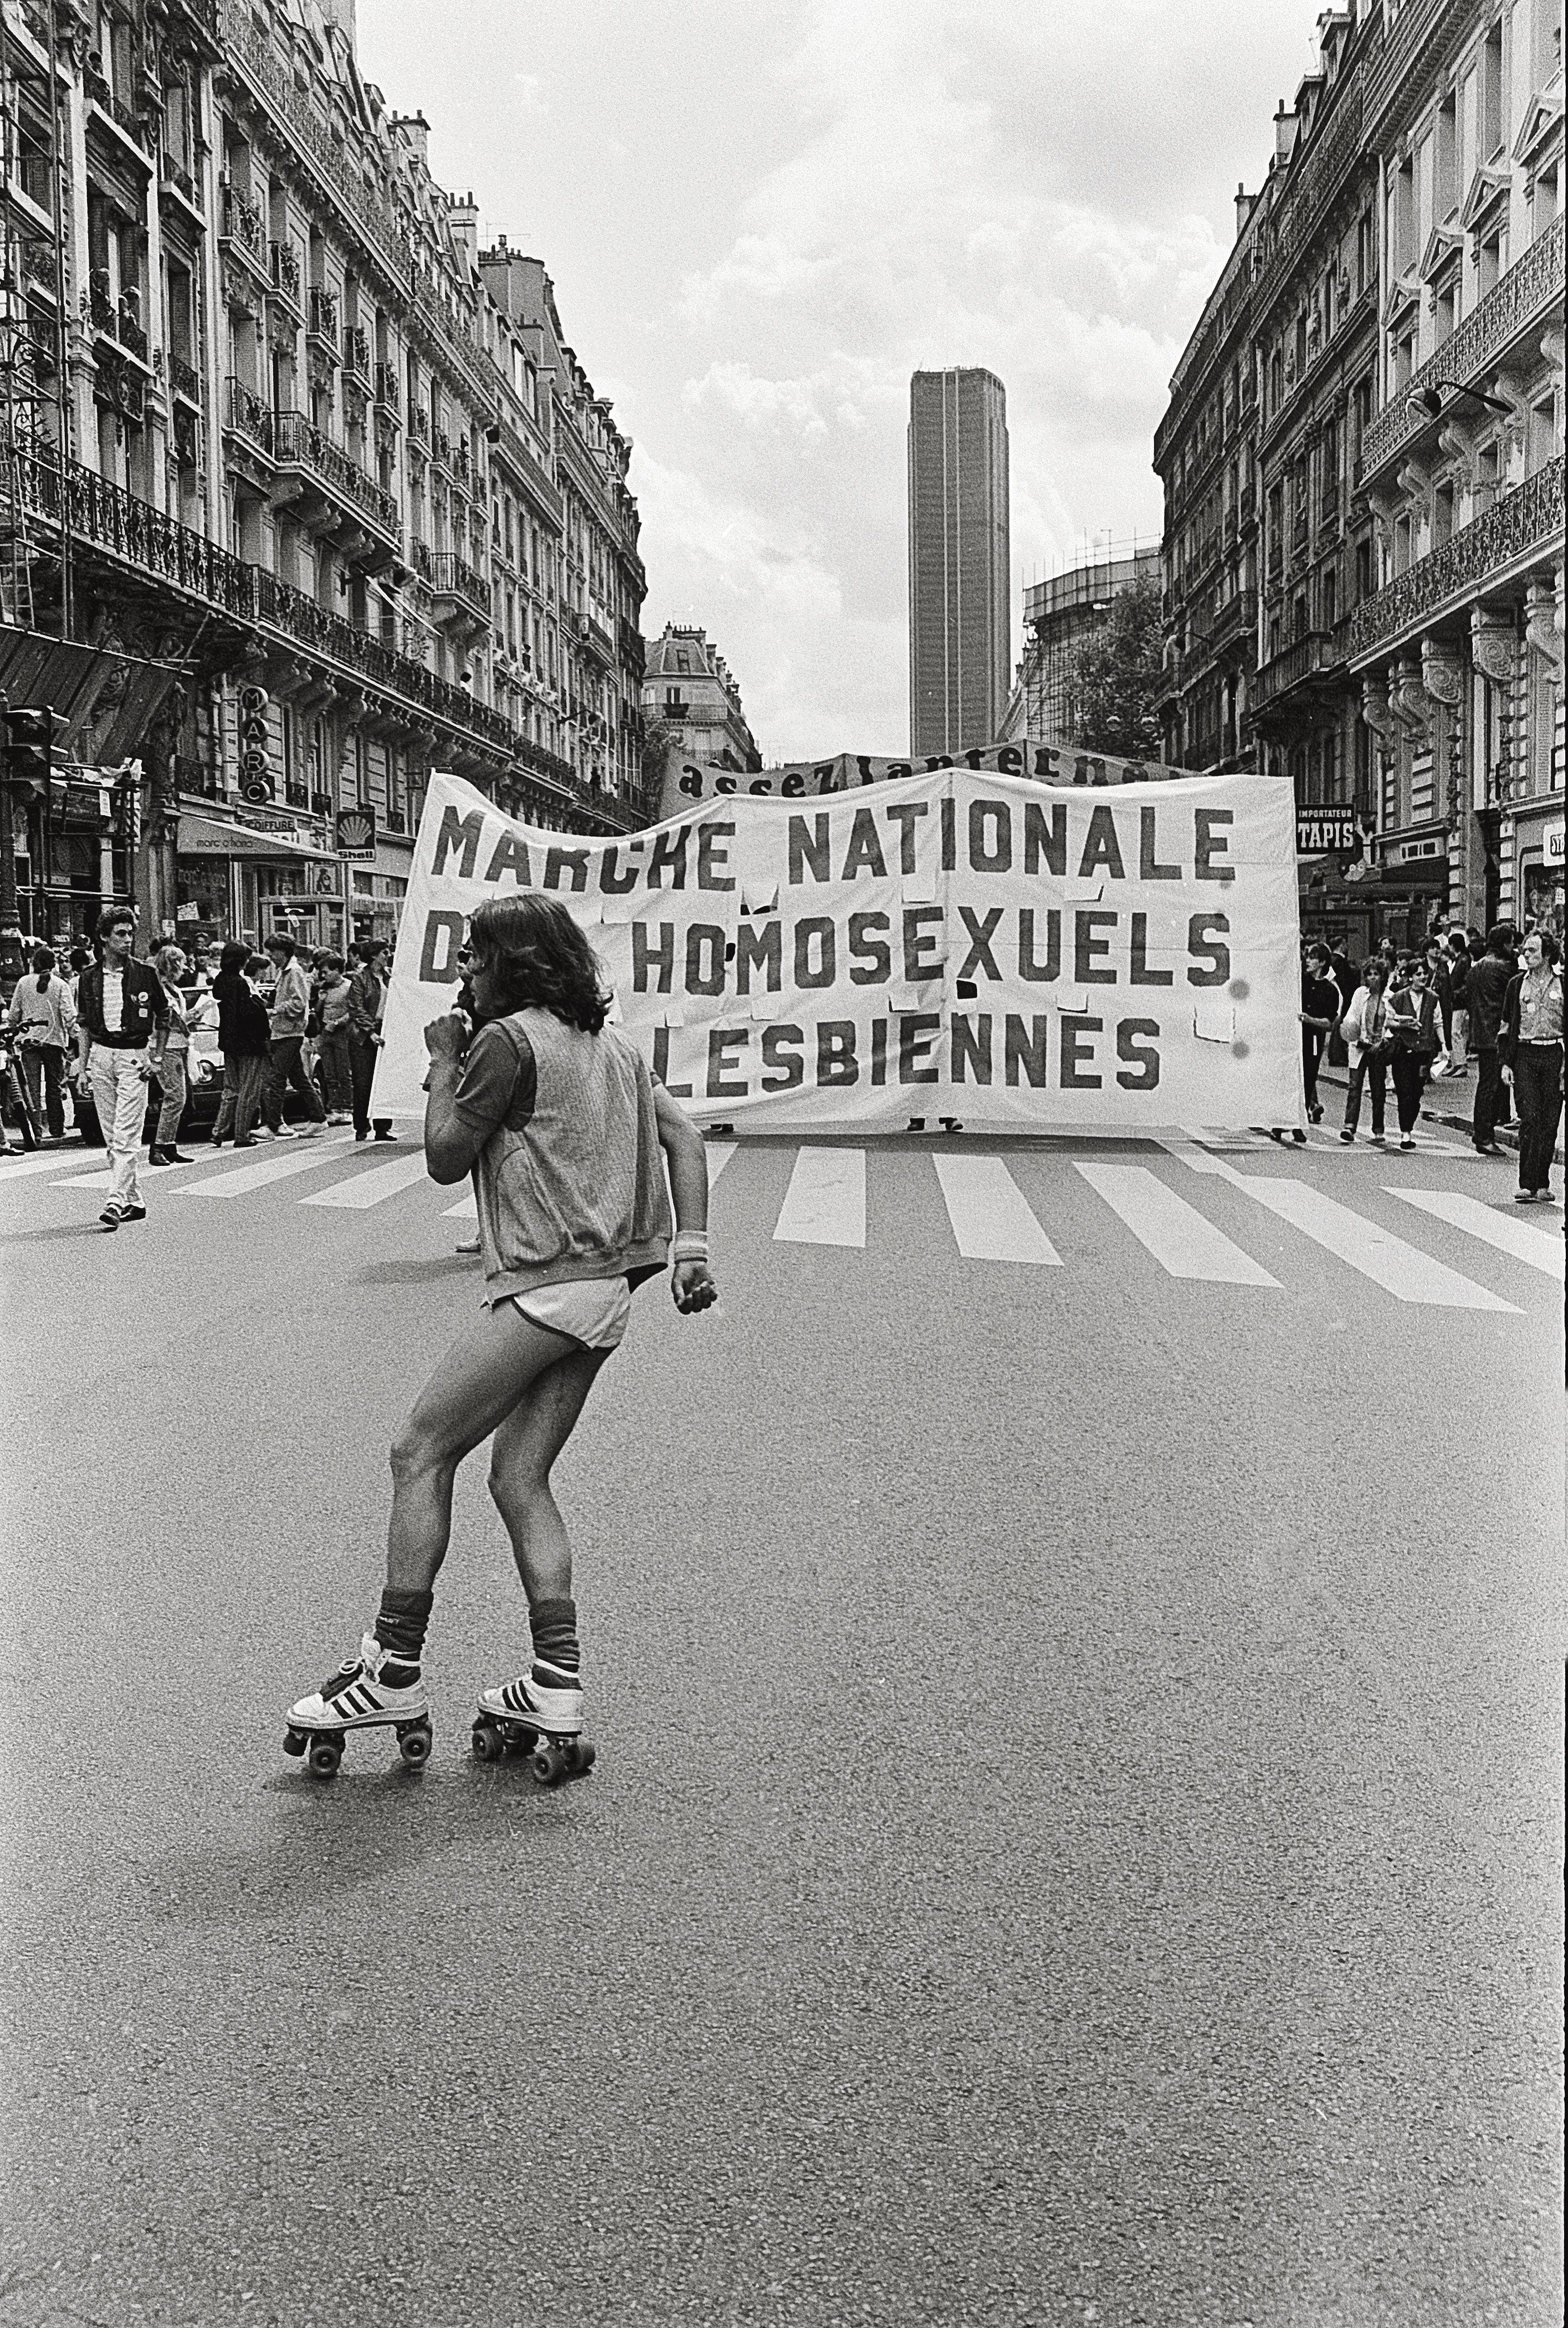 Marche nationale des homosexuels et lesbiennes, 4 avril 1981, Paris.